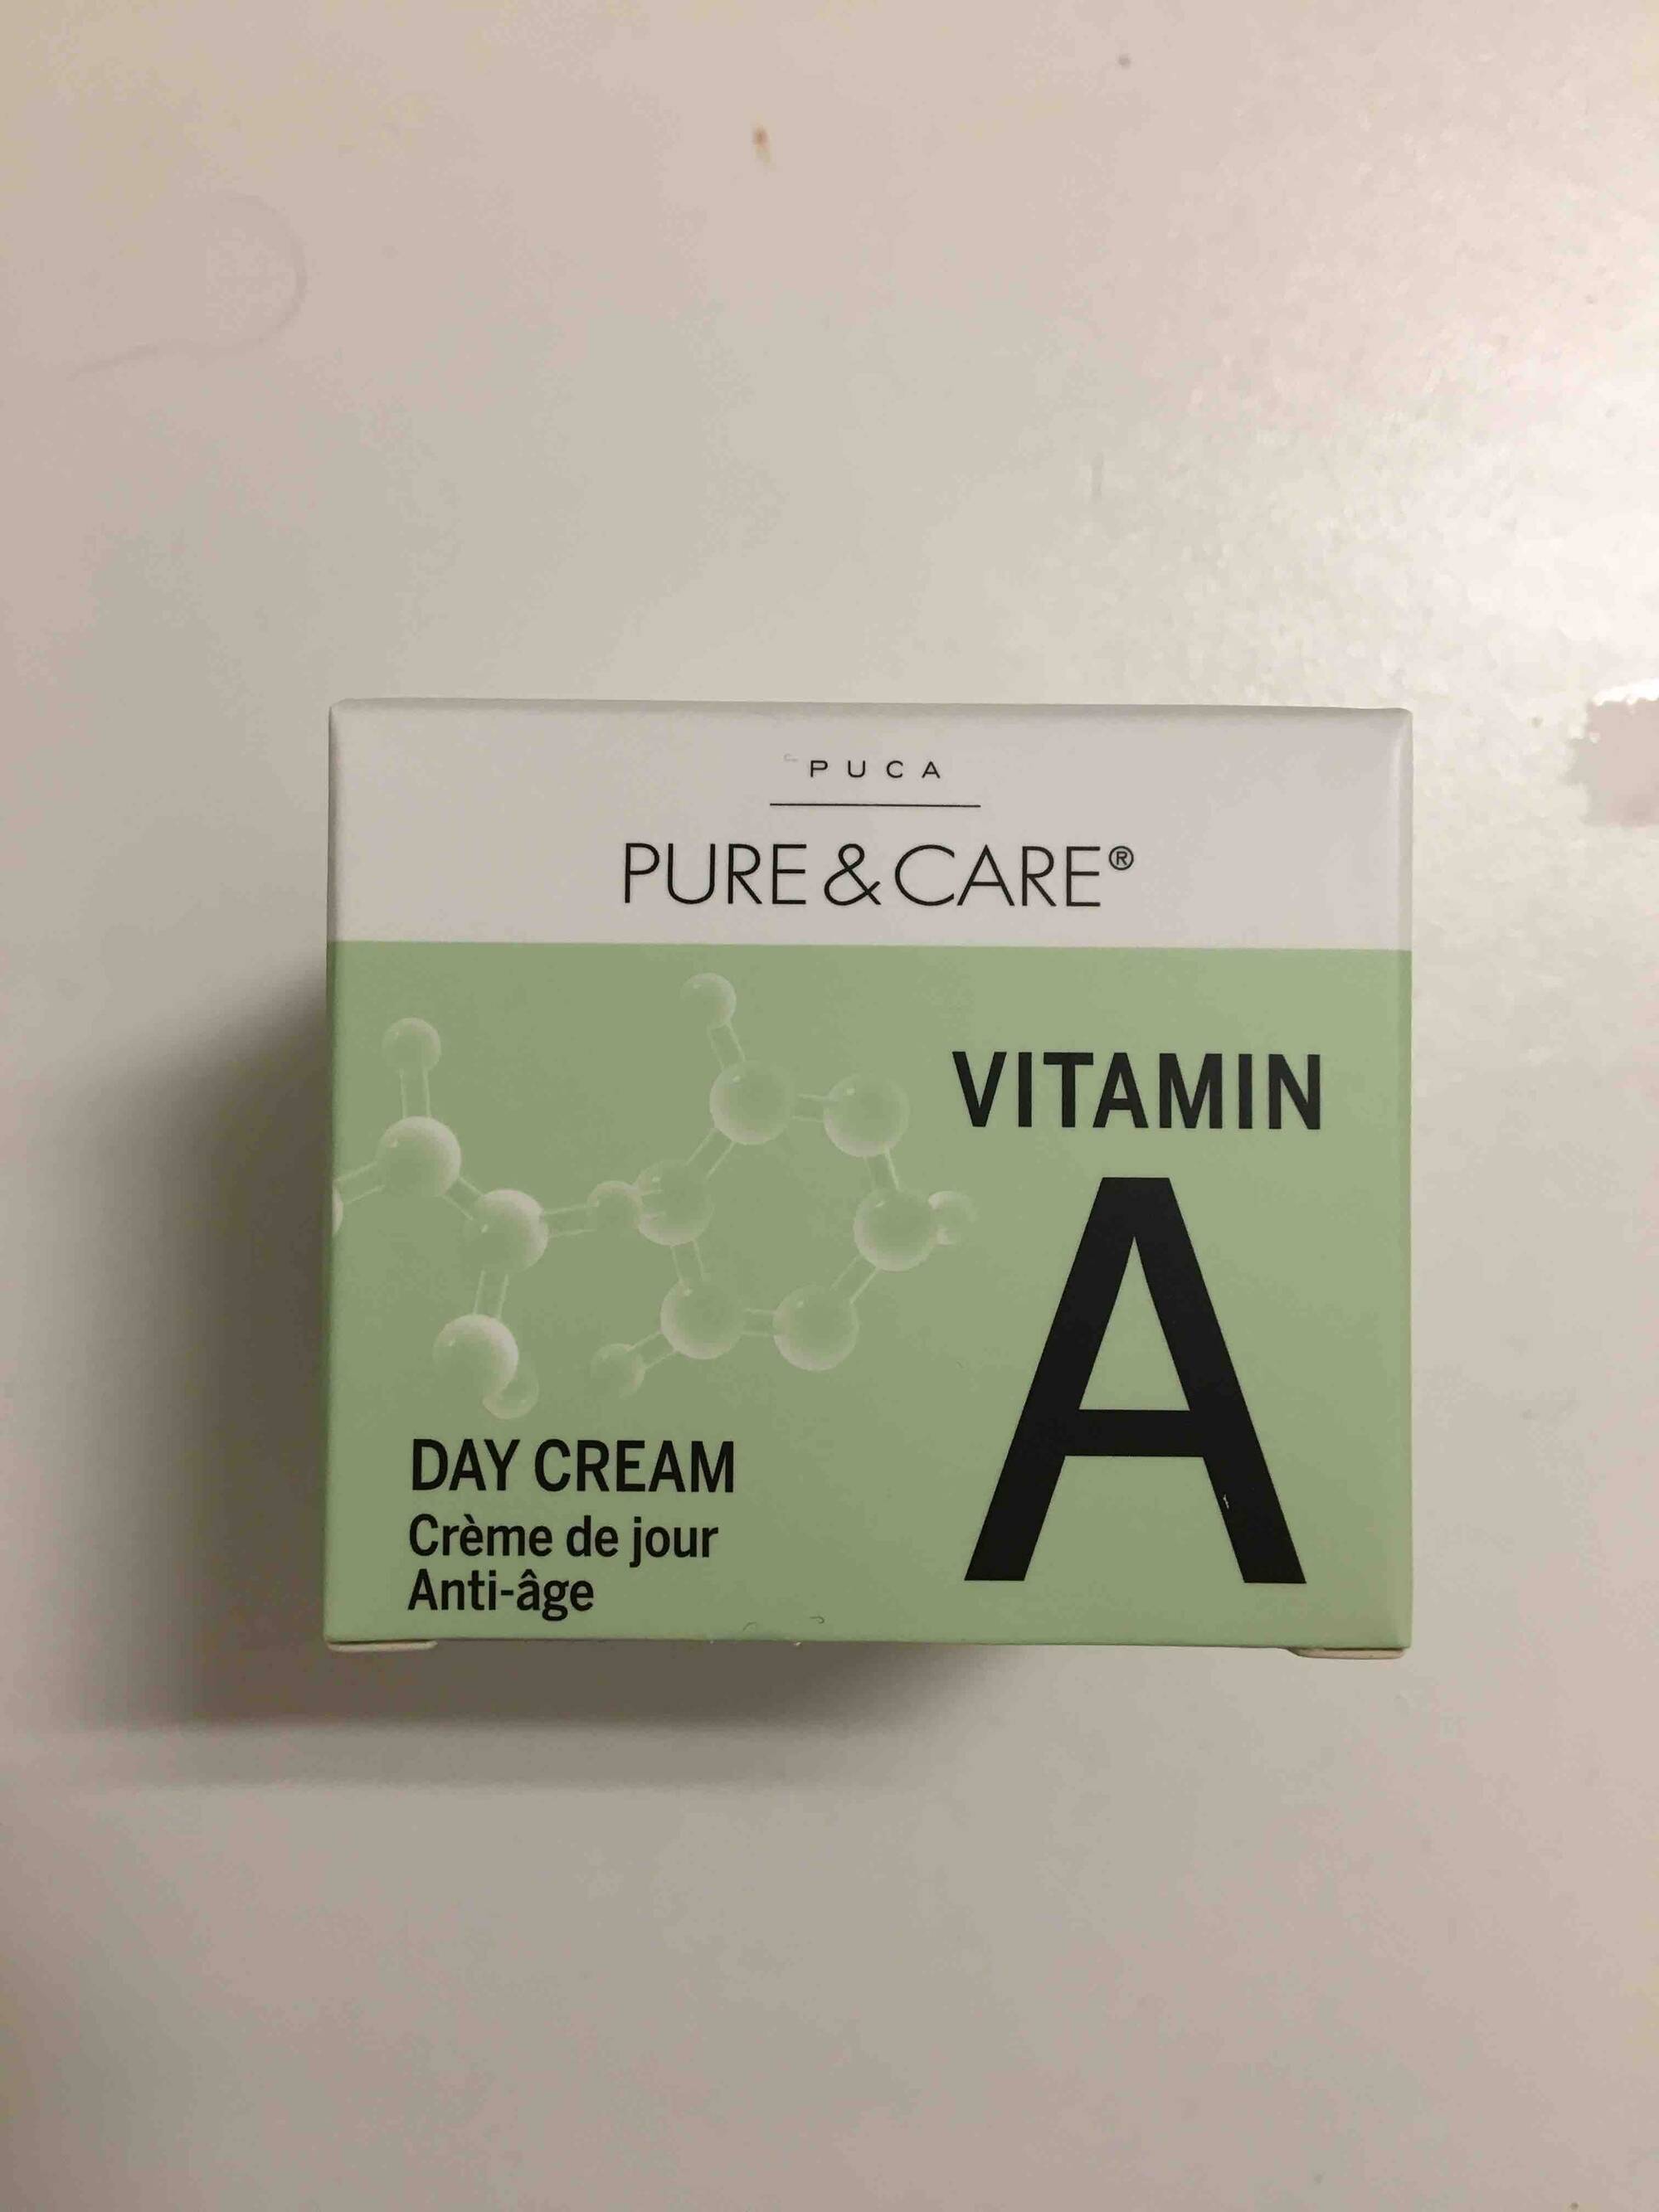 PUCA PURE & CARE - Pure & care vitamine A - Crème de jour anti-âge